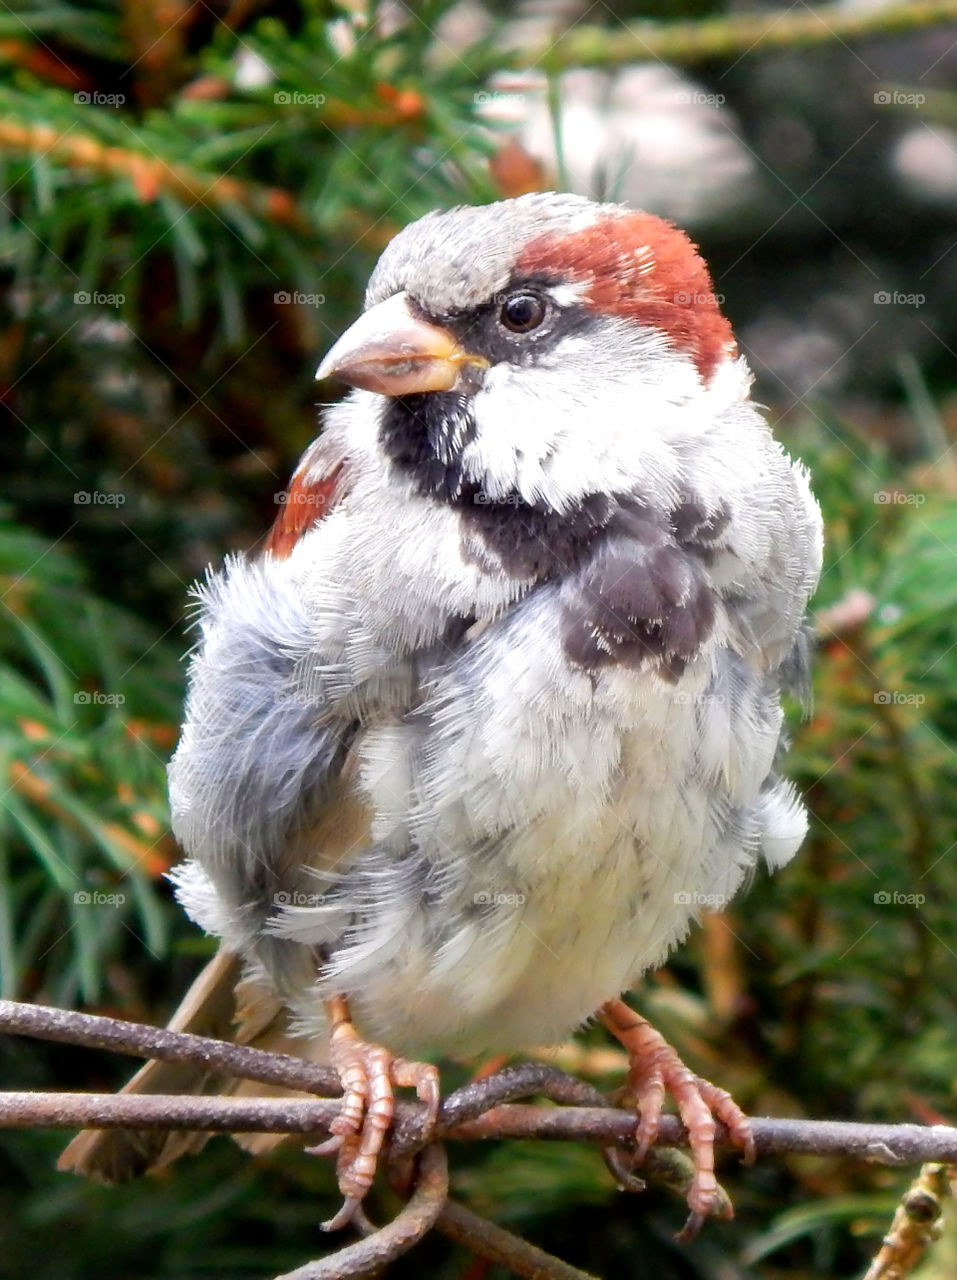 Amazing sparrow